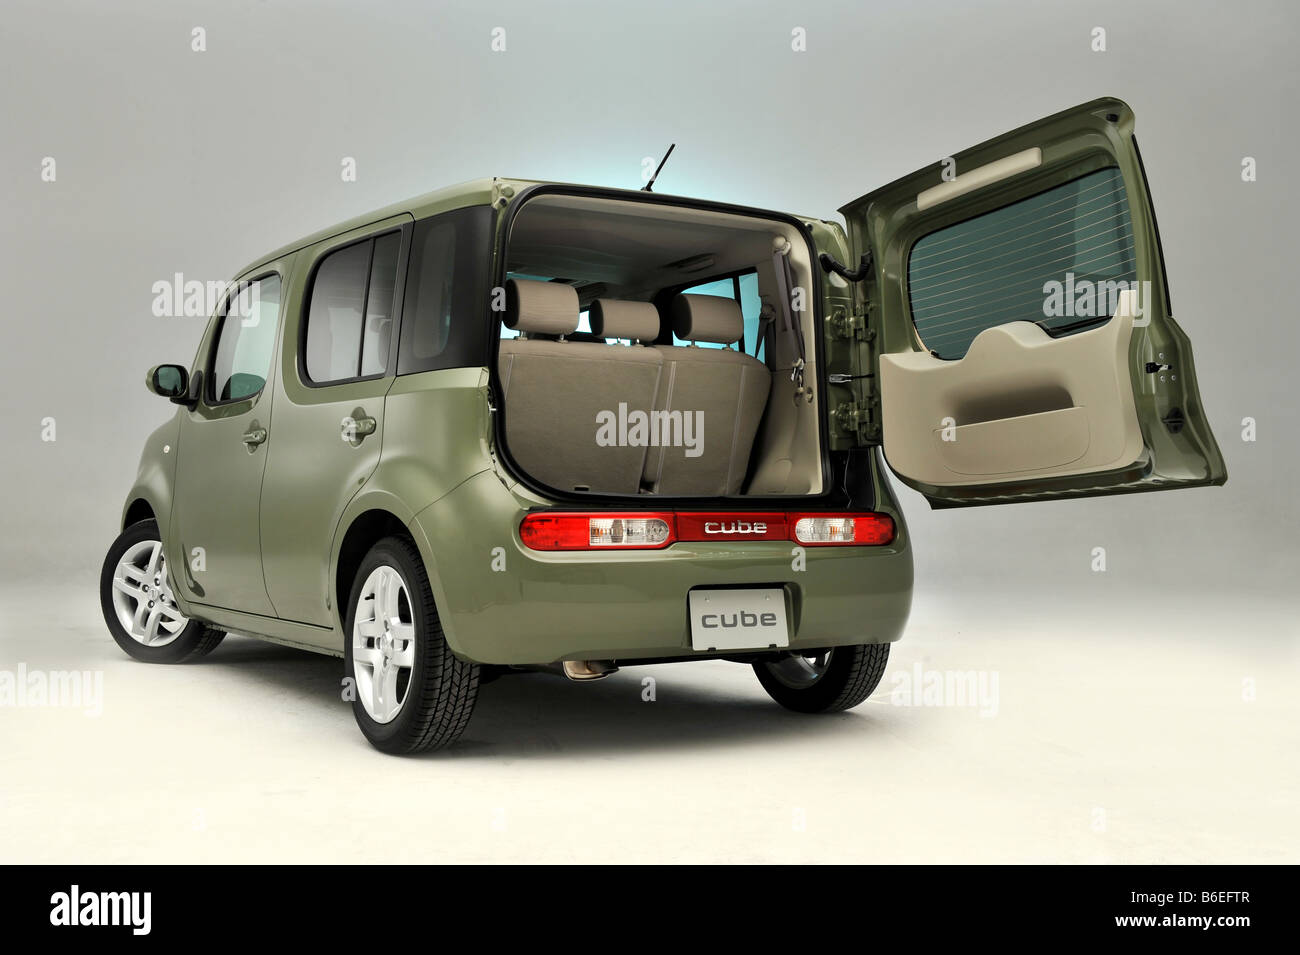 Nissan cube car Banque de photographies et d'images à haute résolution -  Alamy